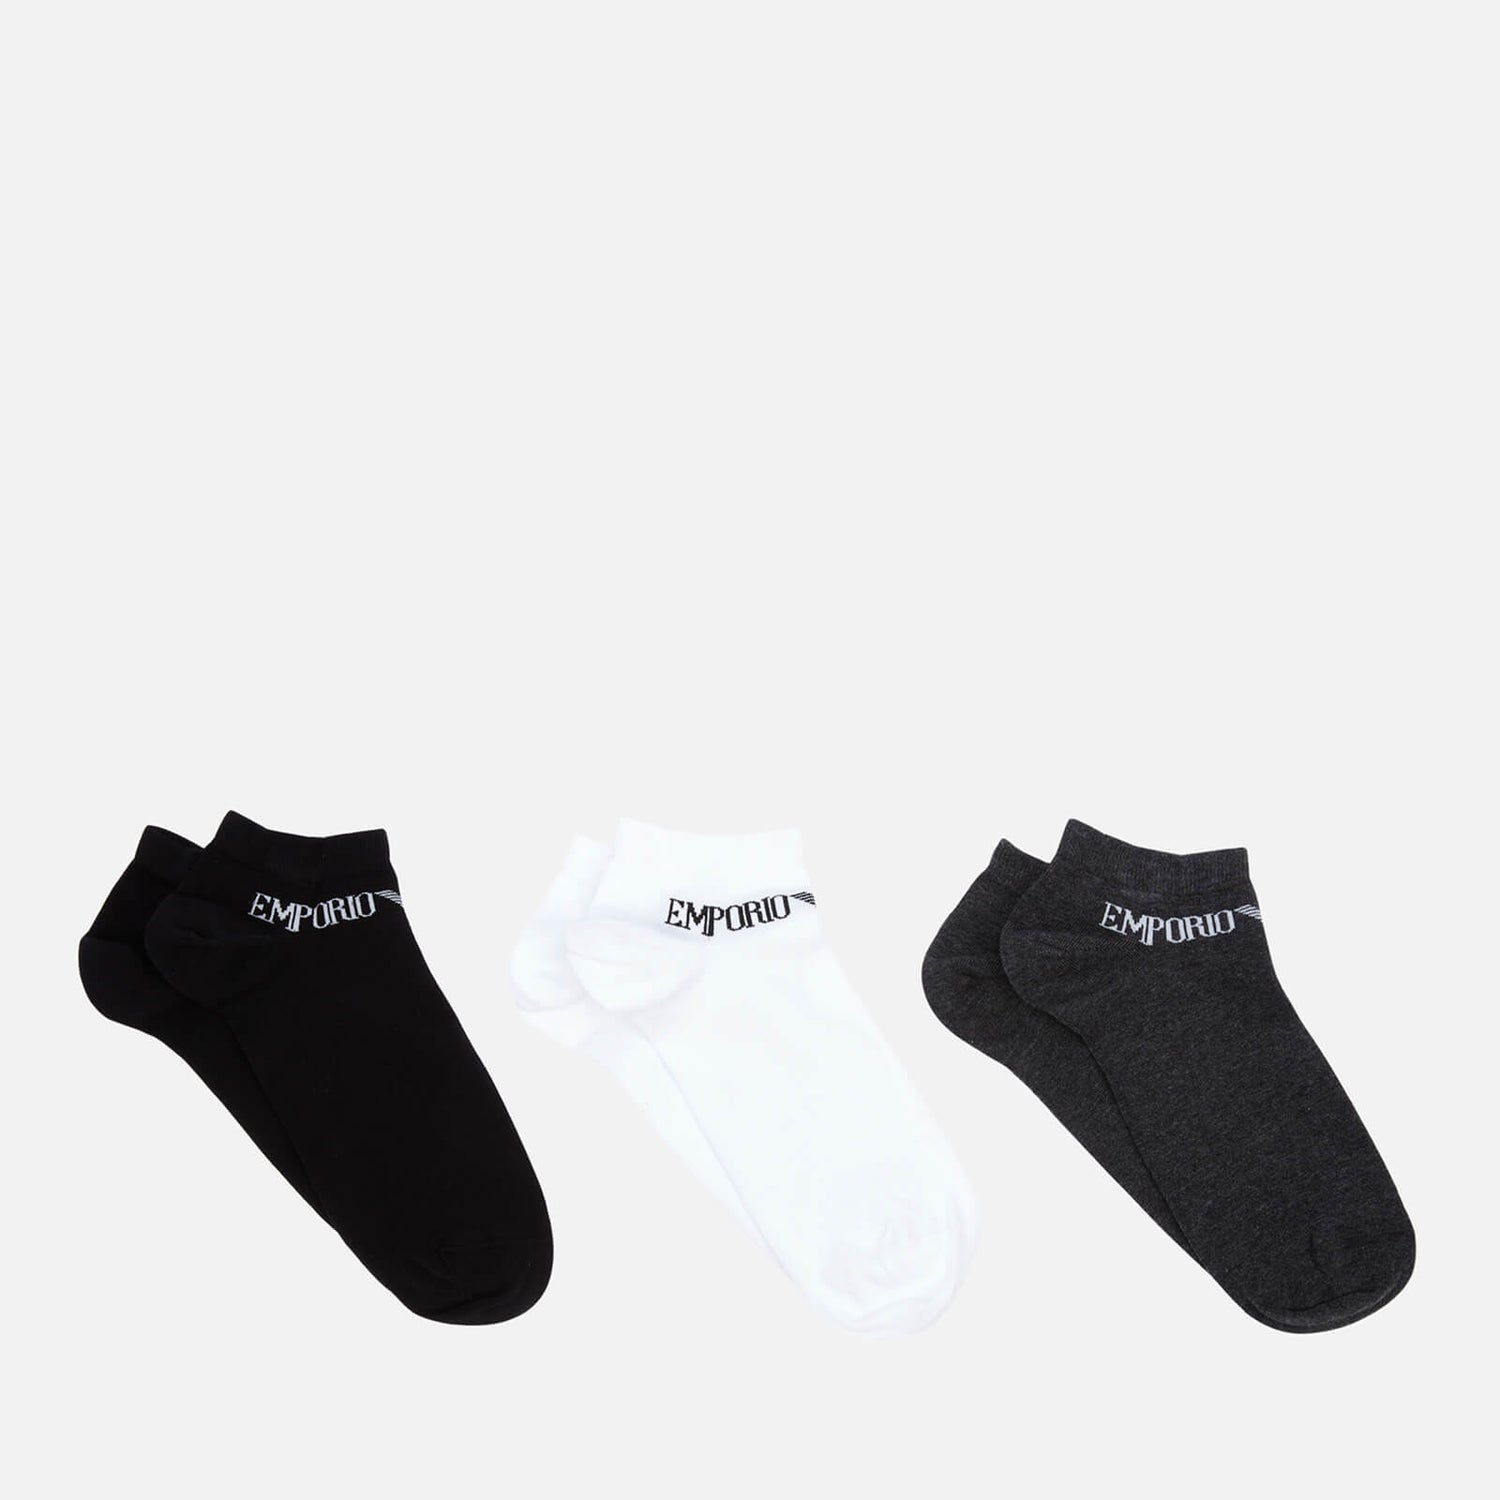 Emporio Armani Men's 3-Pack In Shoe Socks - Black/White/Grey - M